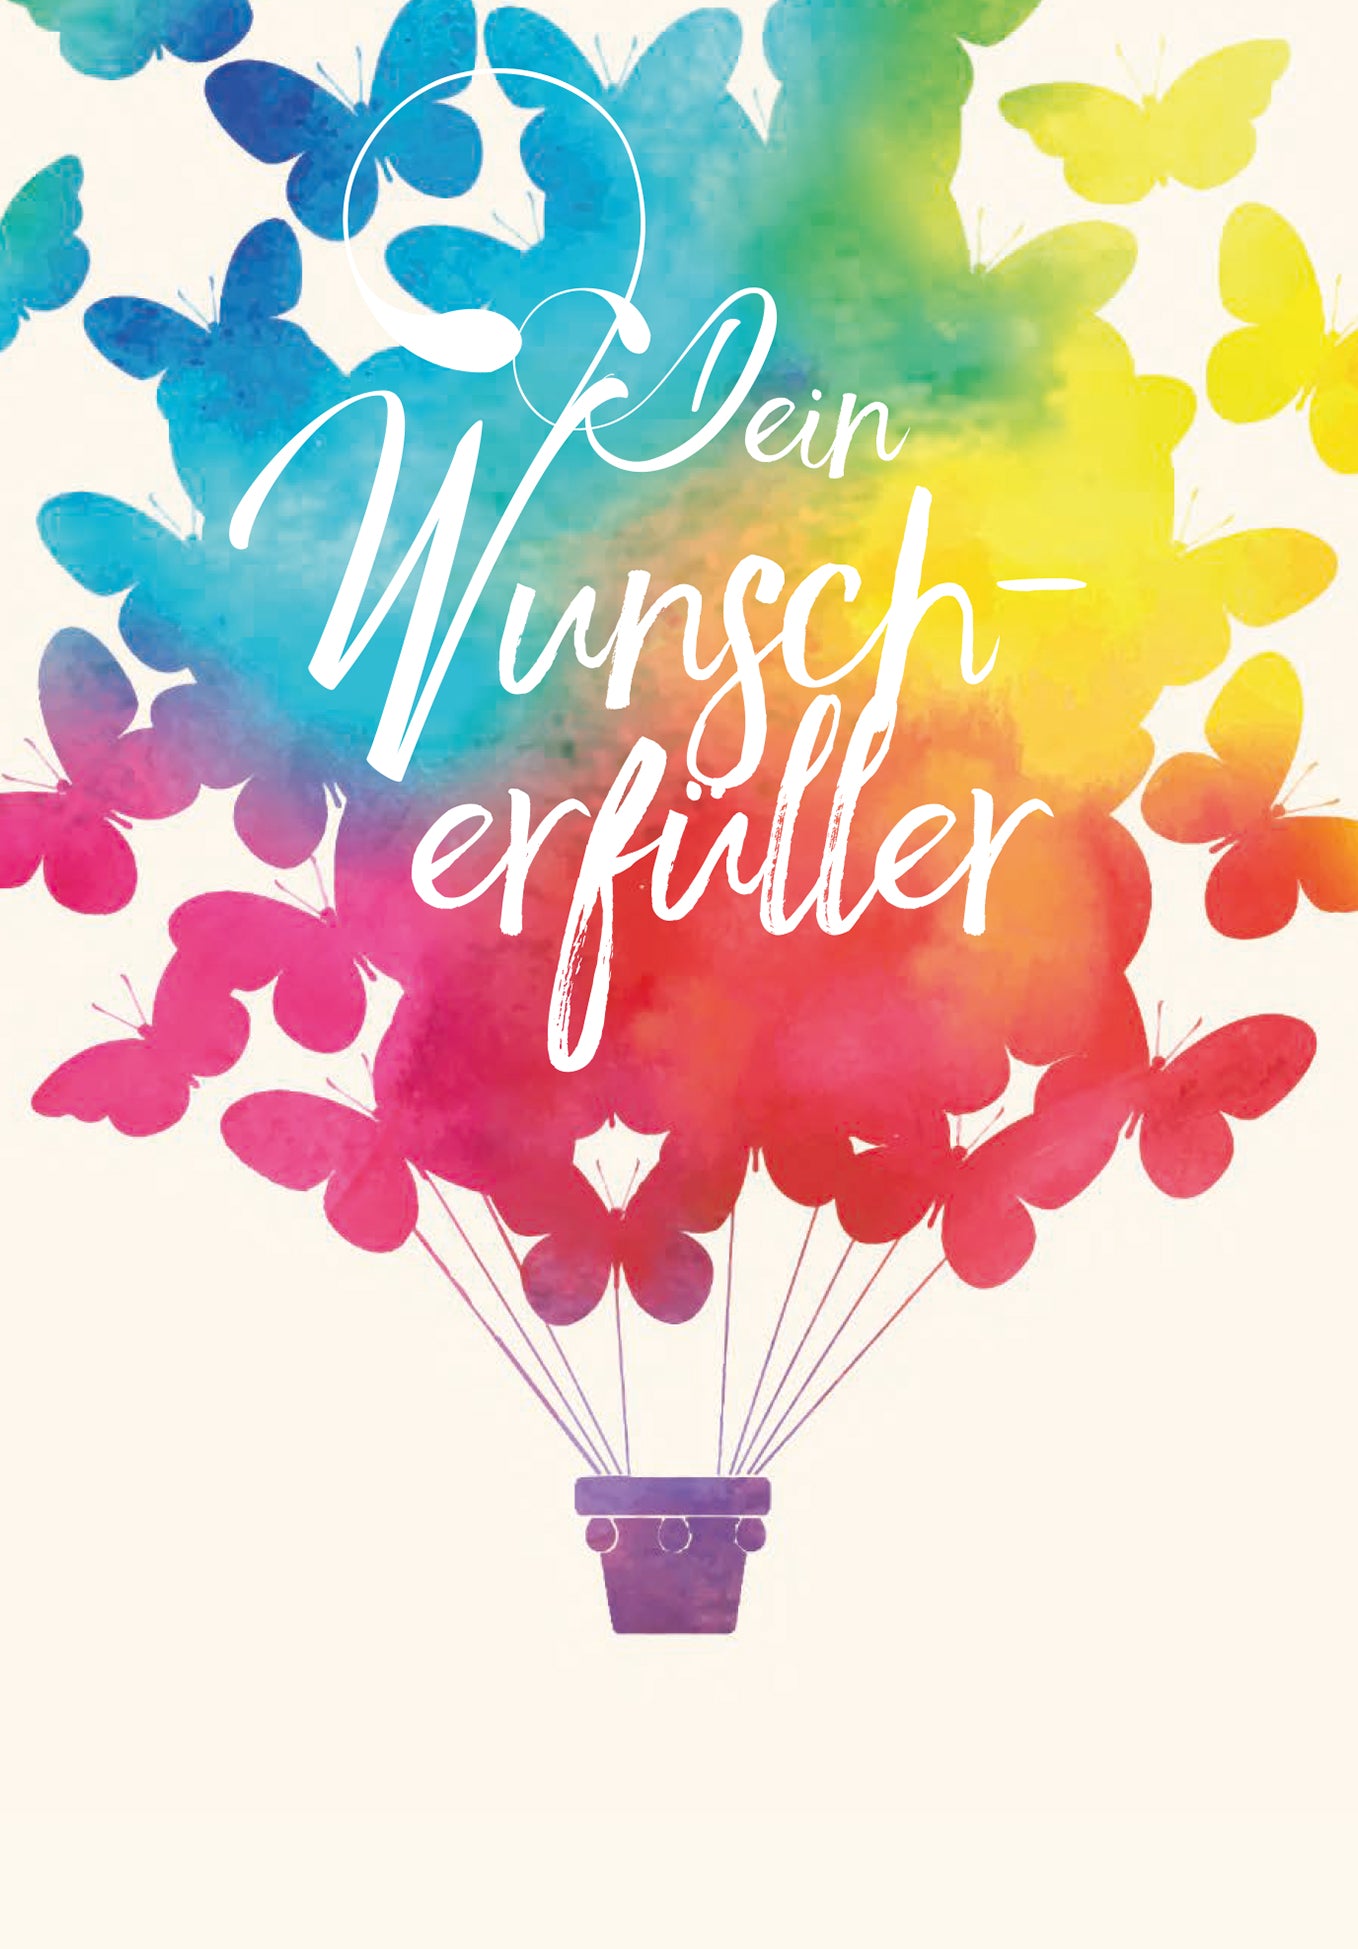 Der Wunscherfüller - Schmetterling (Supplément : Avec logo pour un supplément de 2 €)